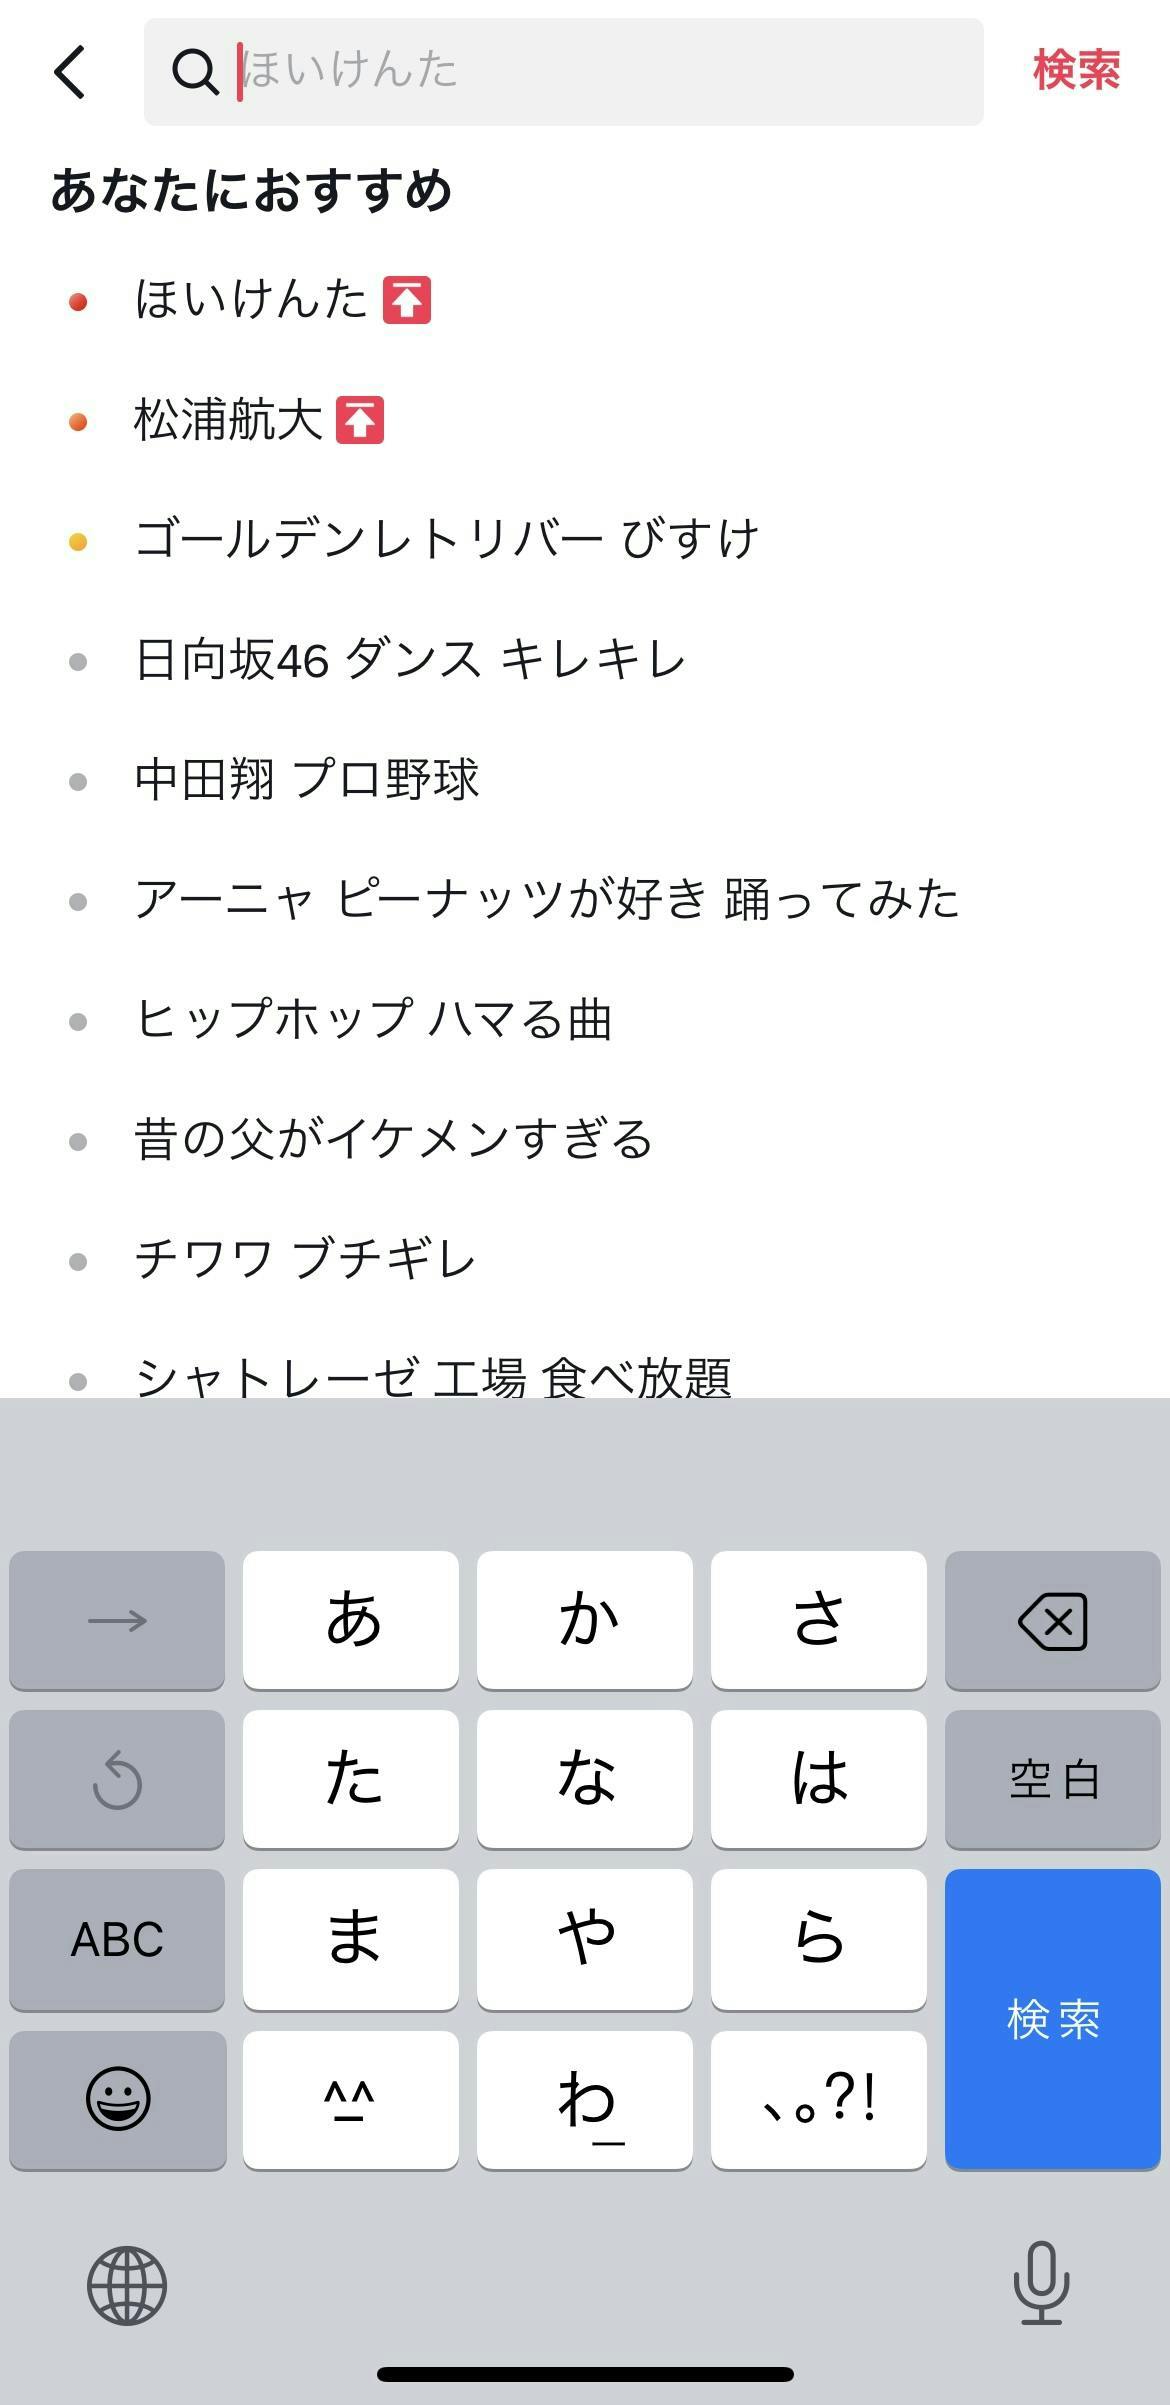 TikTok search screen